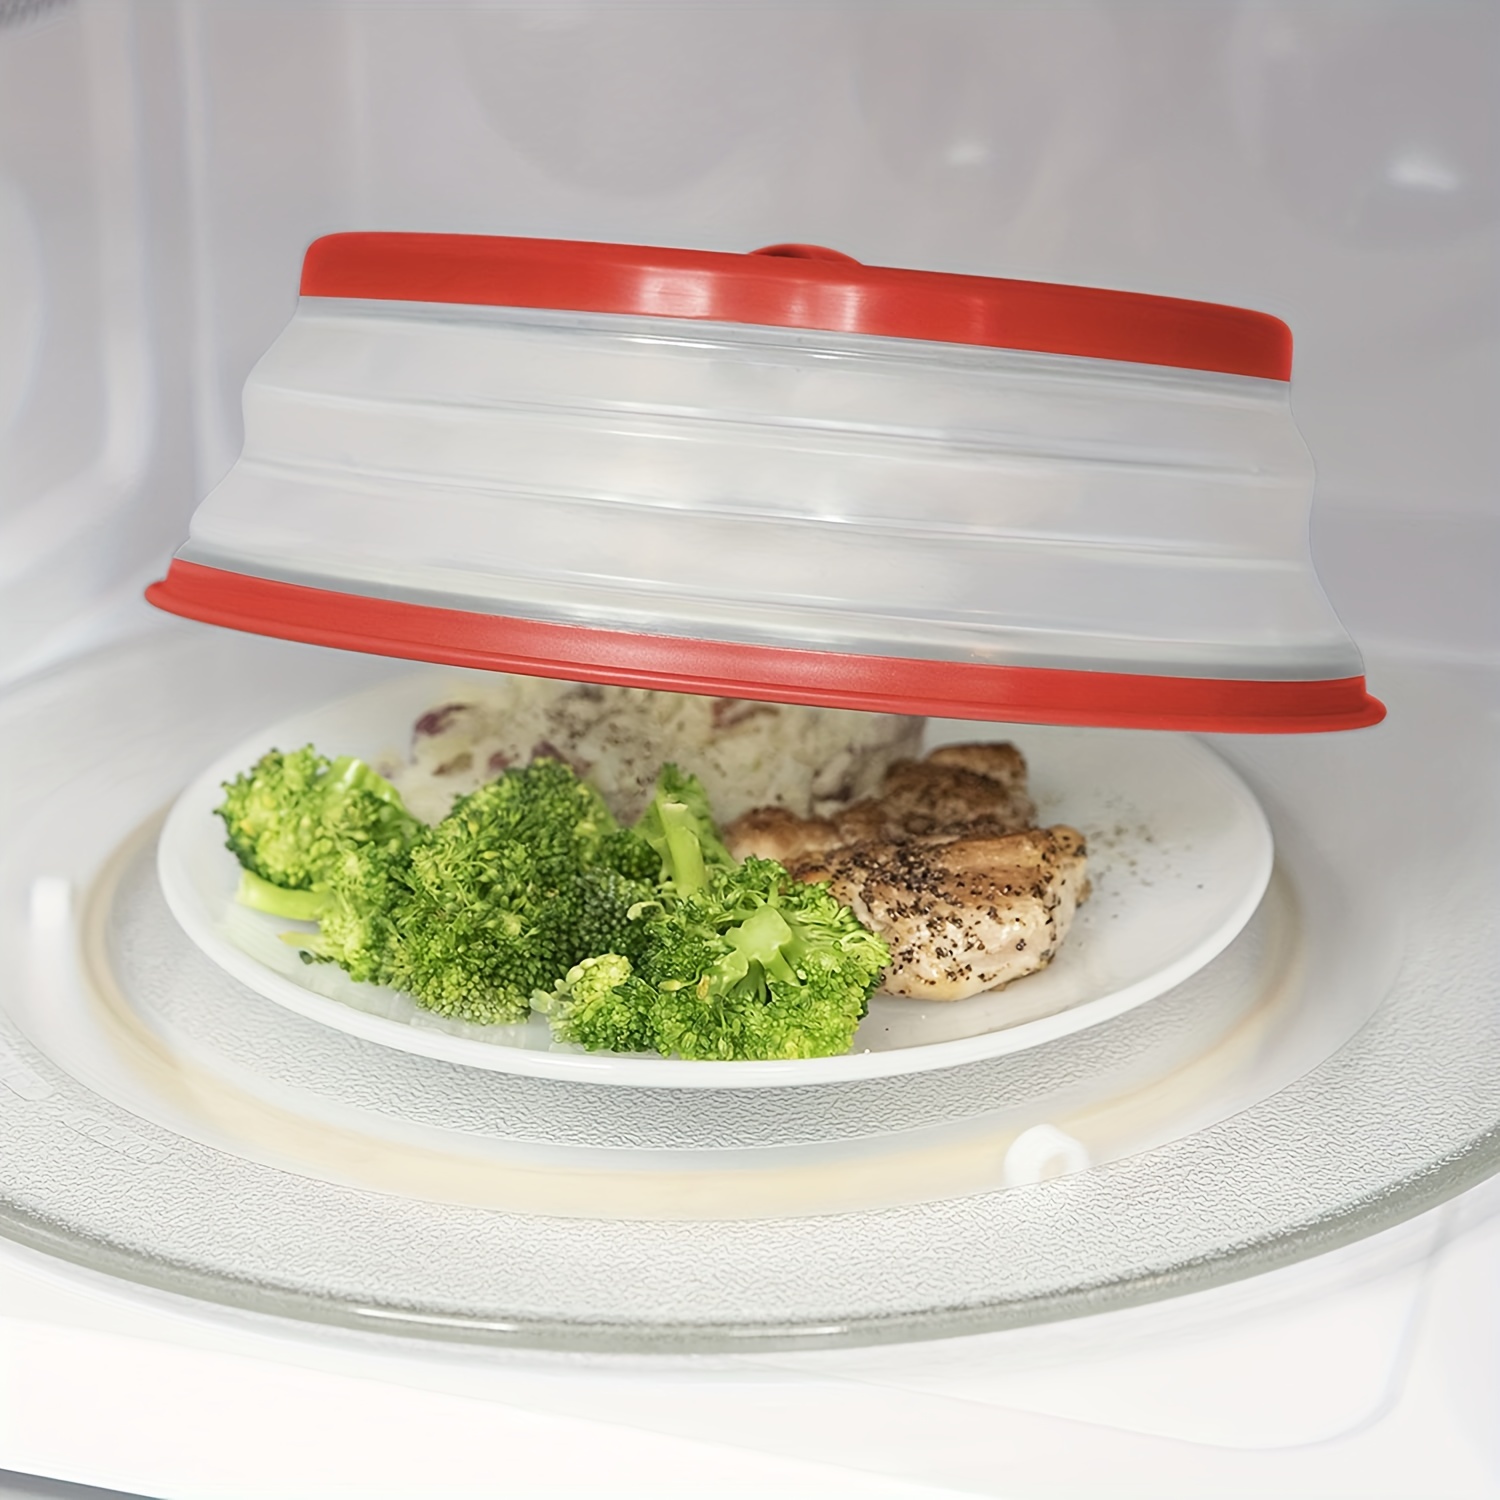 Microwave Splatter Cover Vented for Food, Splatter Guard & Colander Kitchen  Gadget for Fruit Vegetables Microwave Plate Cover with Hook